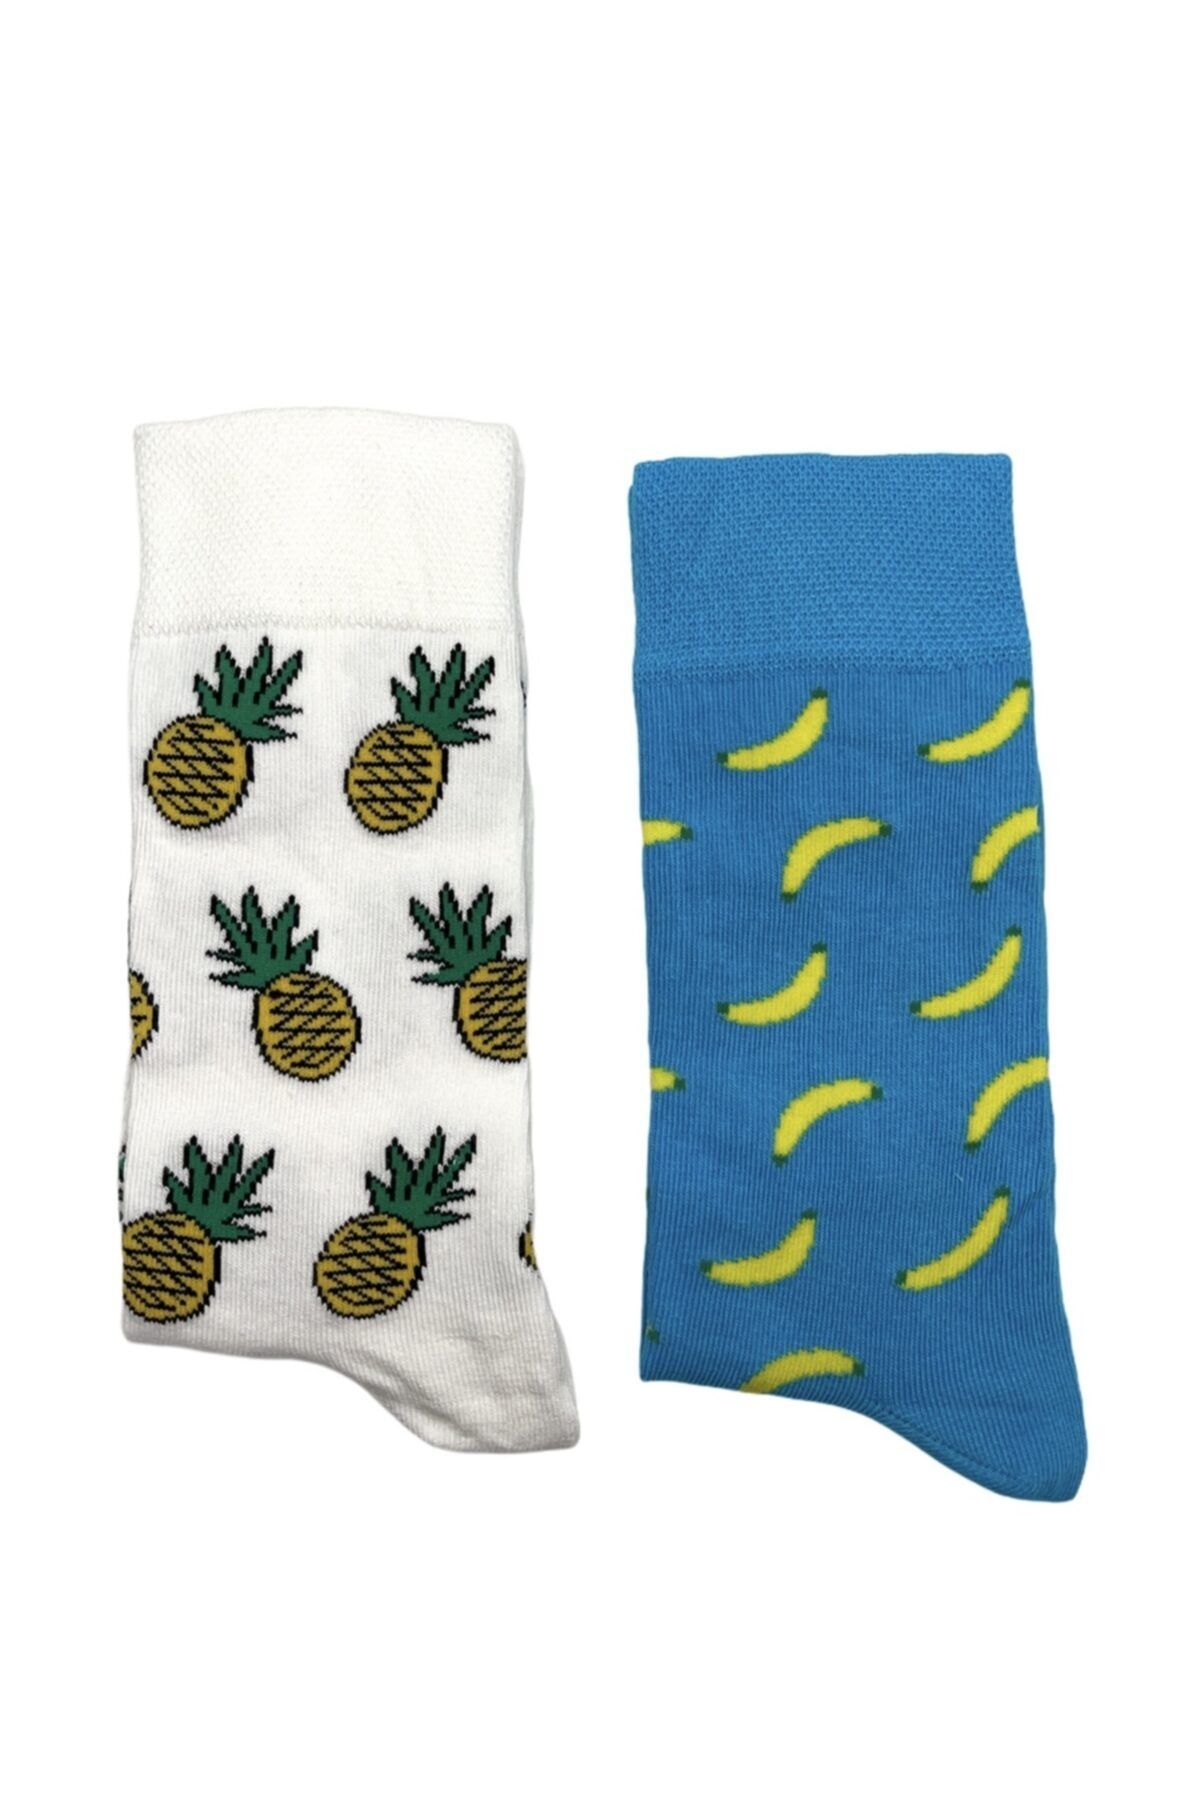 NBG ÇORAP Erkek Beyaz Ananas Ve Muz Desenli Çoraplar 2'li